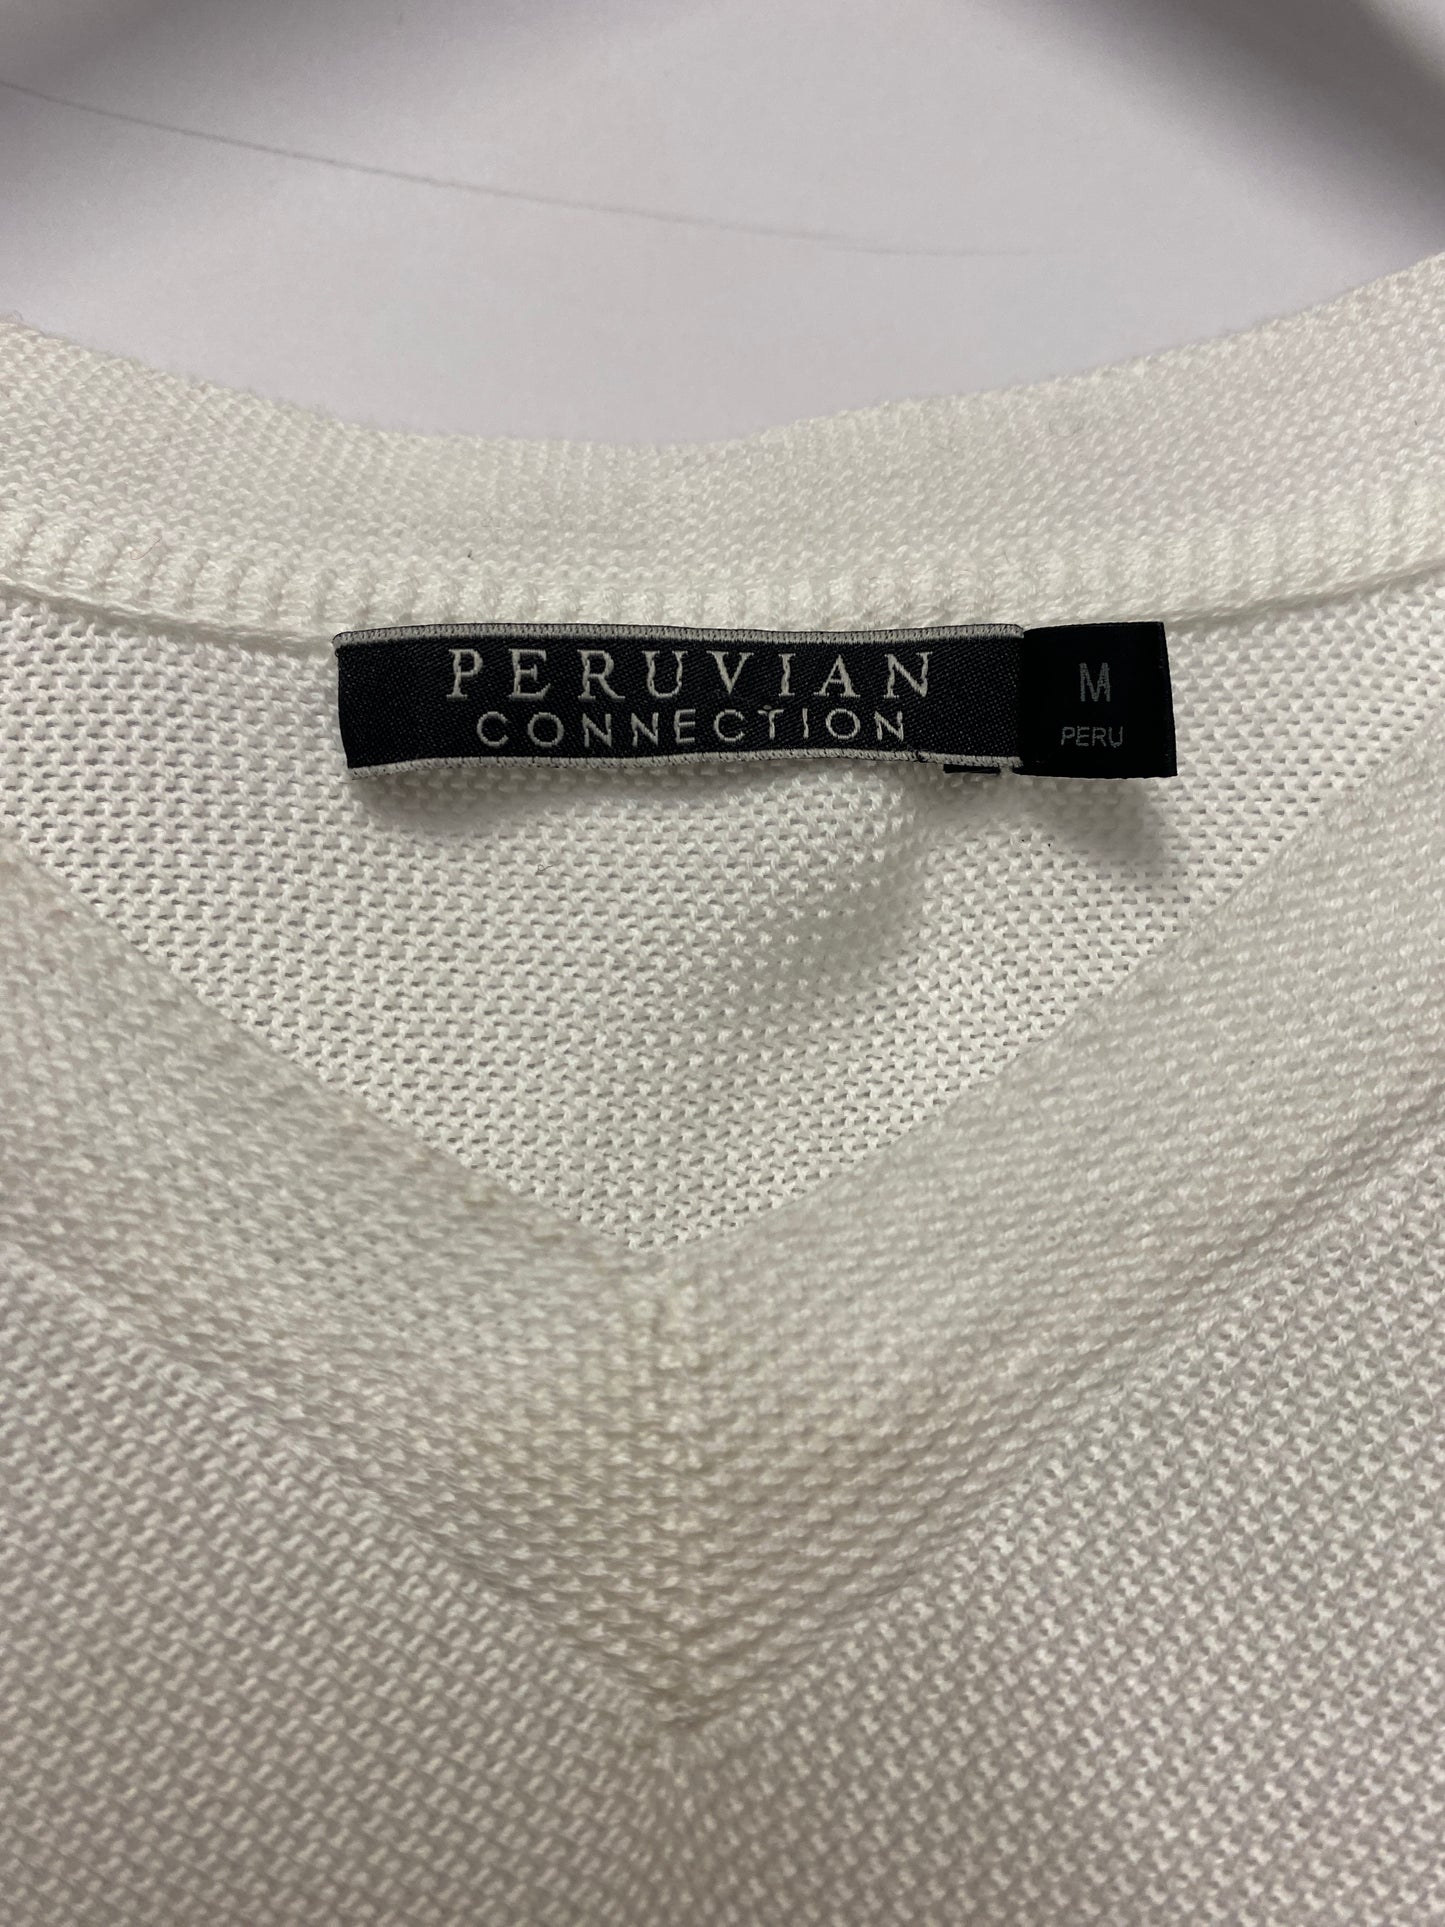 Peruvian Connection White Cotton Vest M